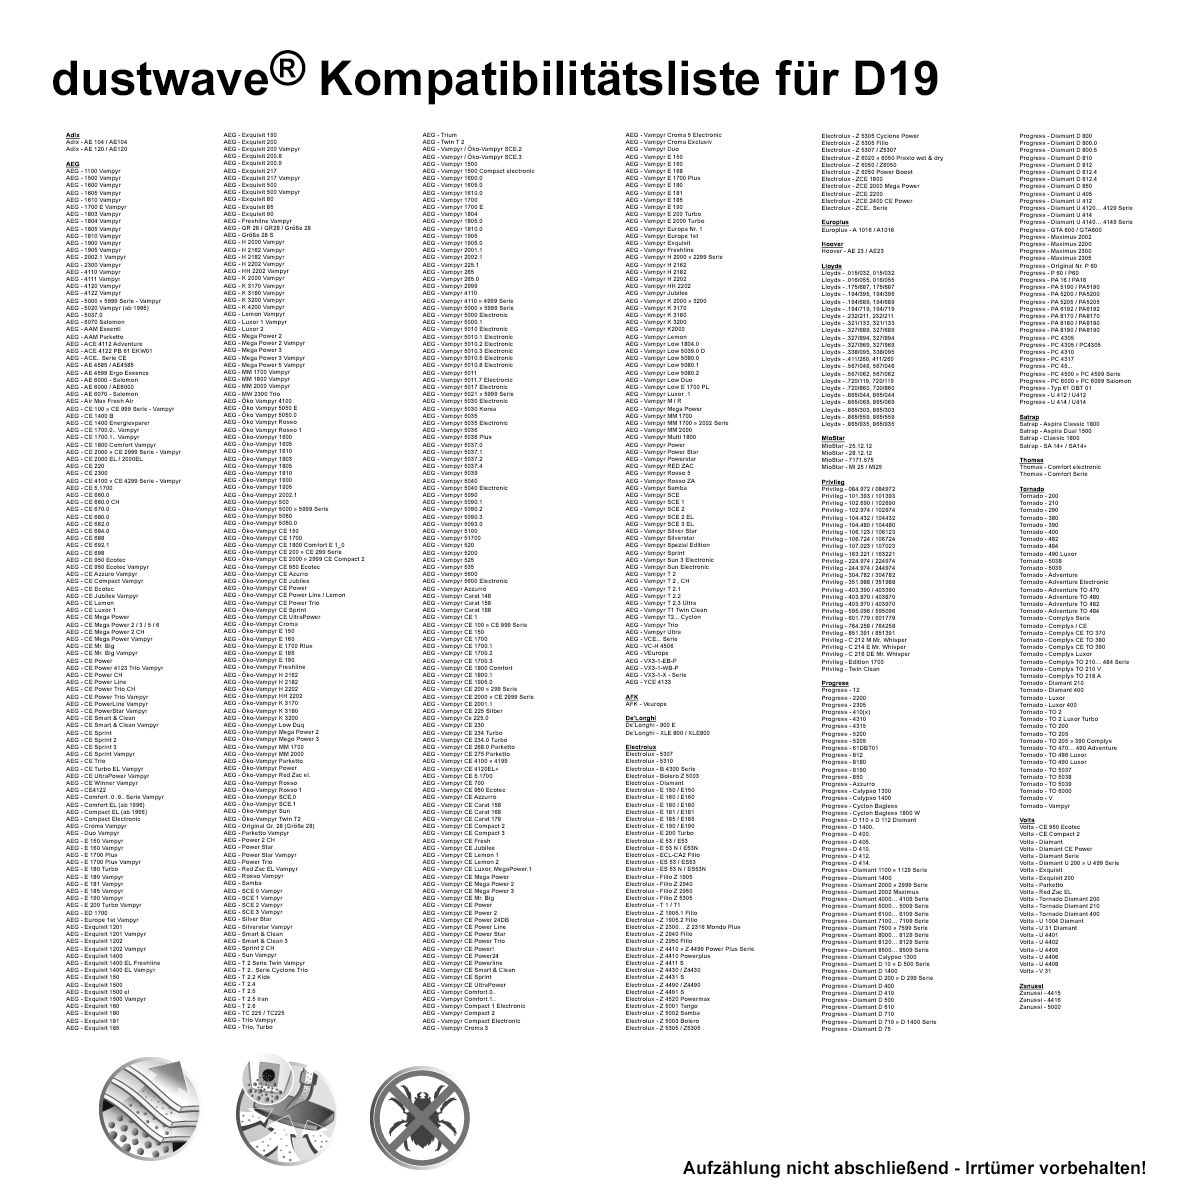 Dustwave® 20 Staubsaugerbeutel für AEG CE Power Trio Vampyr - hocheffizient, mehrlagiges Mikrovlies mit Hygieneverschluss - Made in Germany